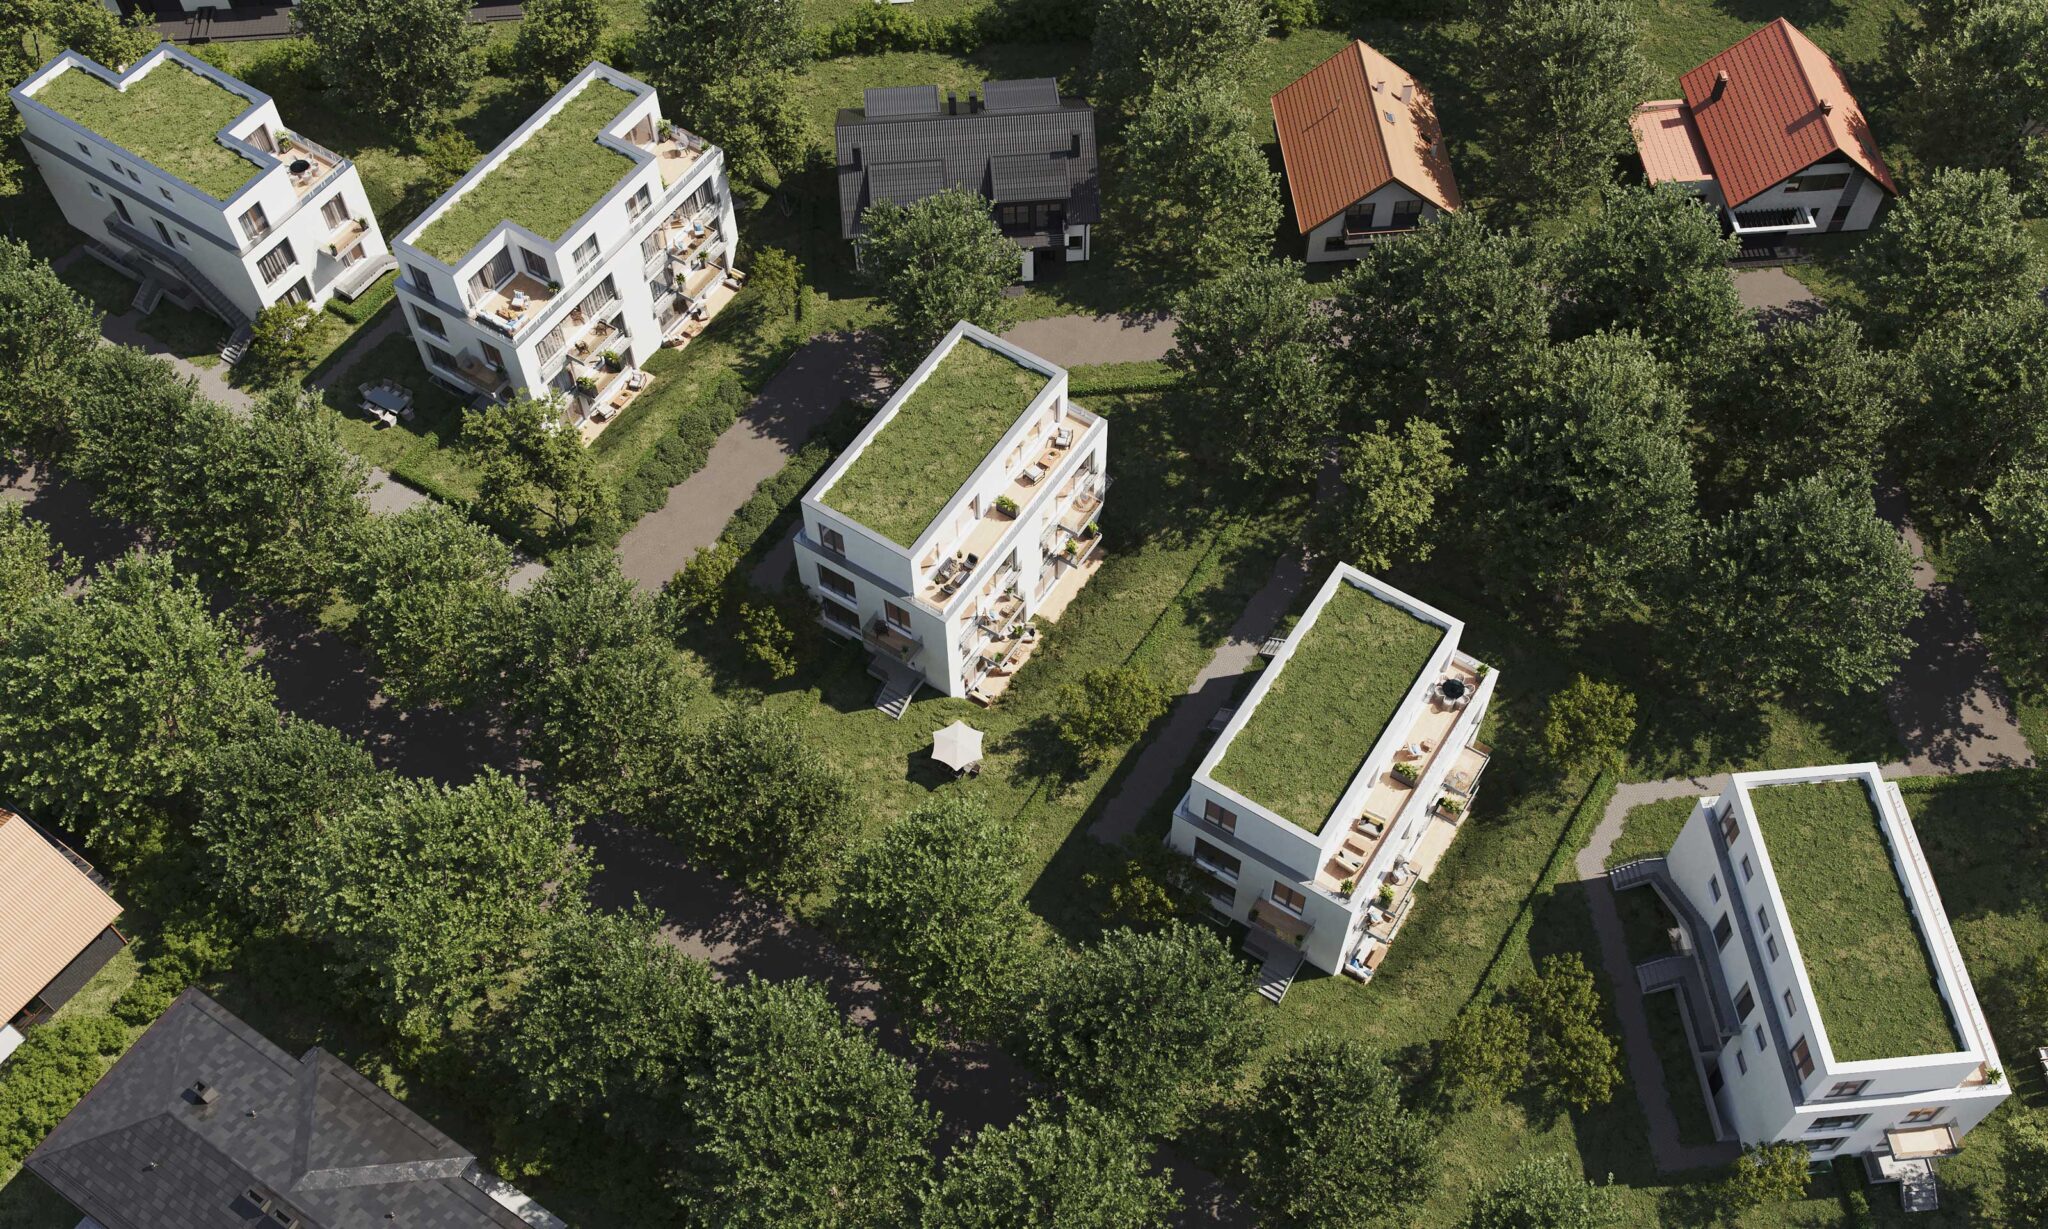 Neubau von 5 Mehrfamilienhäusern mit jeweils 4 Wohnungen in Berlin Rudow, Vogelperspektive